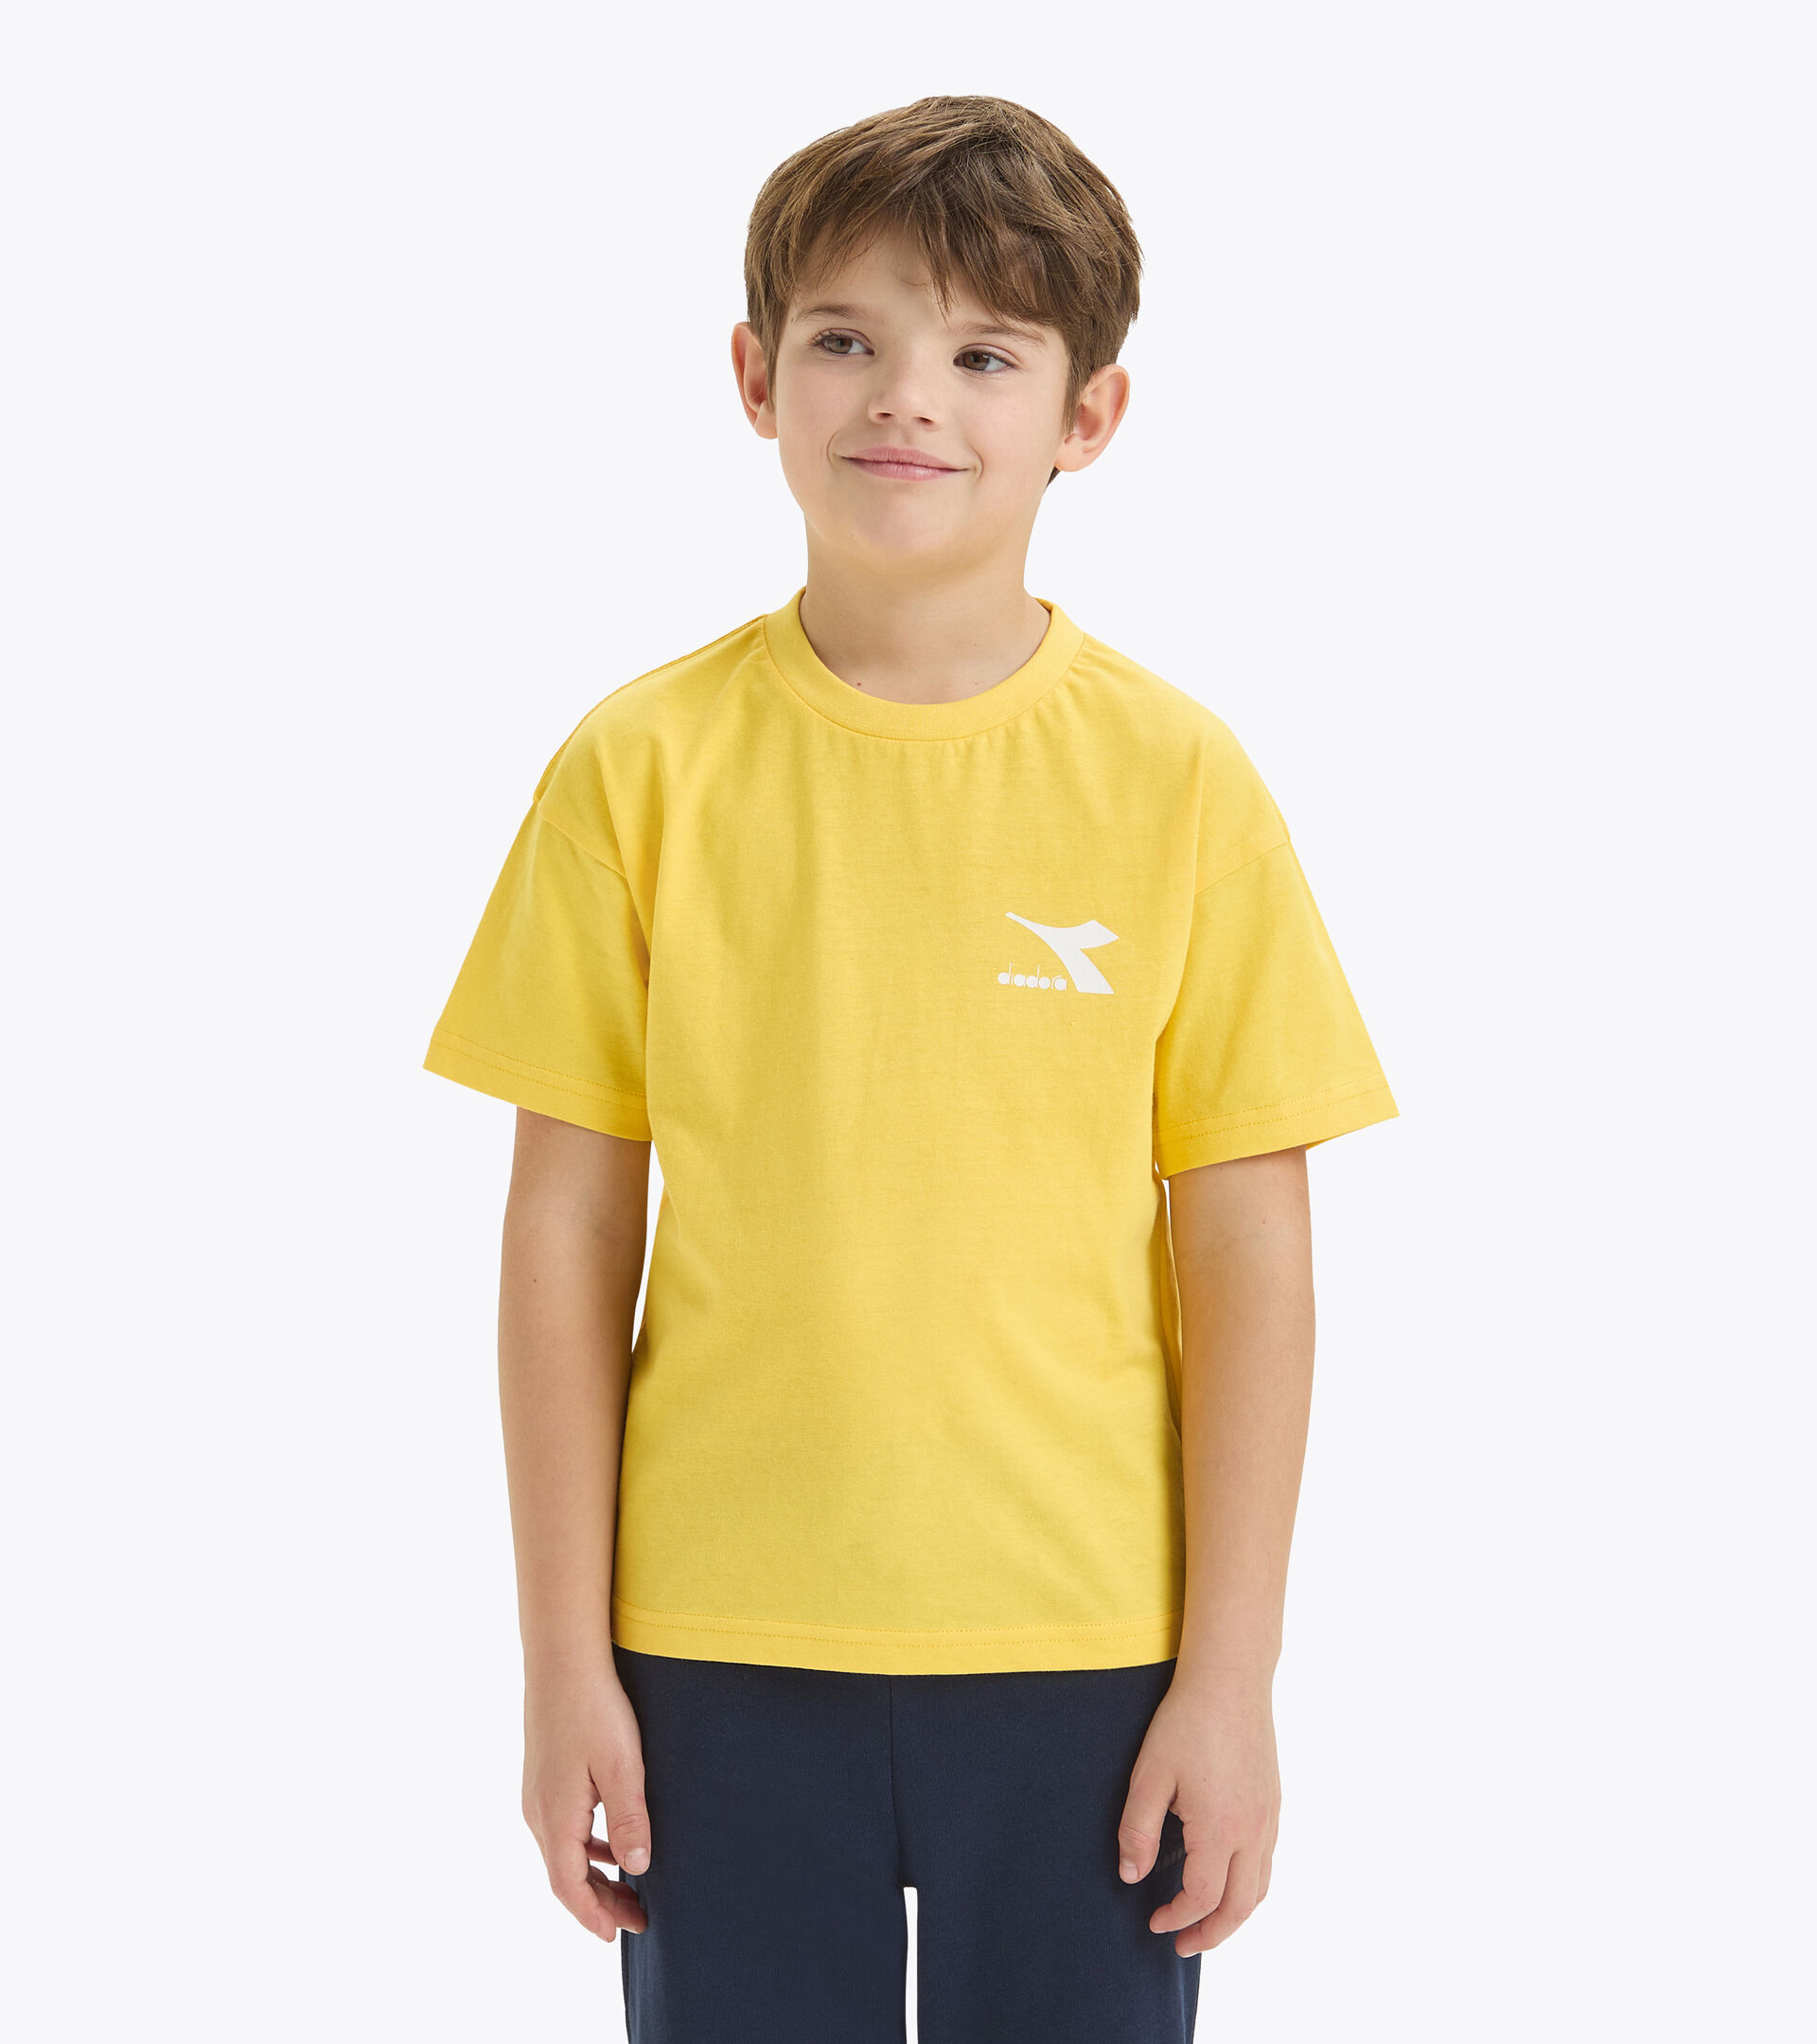 T-shirt en coton - Enfant
 JU.T-SHIRT SS SL JAUNE TREMBLE DORE - Diadora